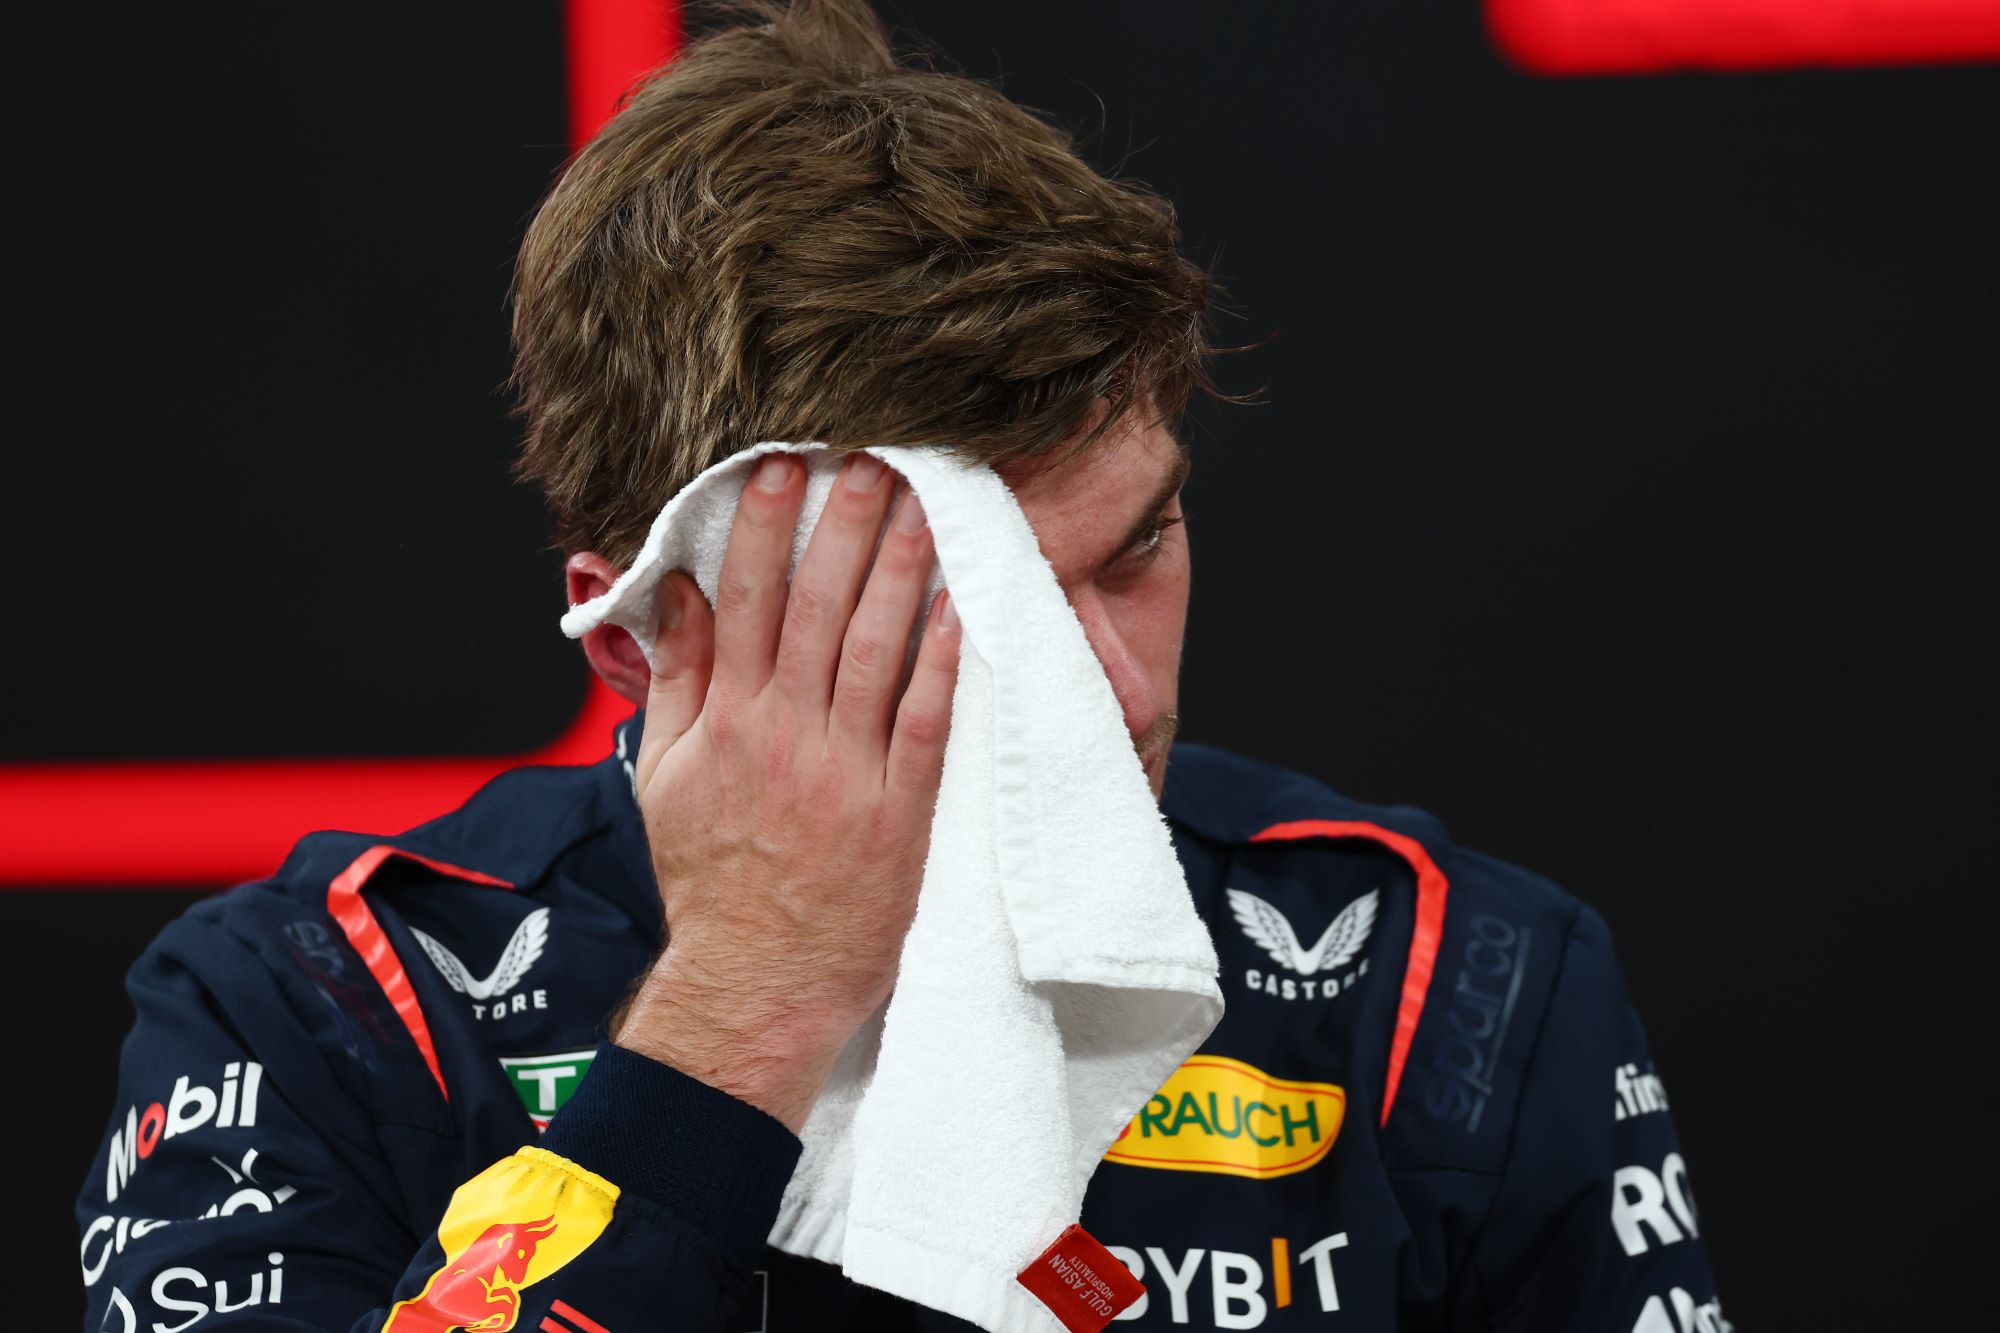 F1: Verstappen comenta sobre las condiciones climáticas extremas durante los GP